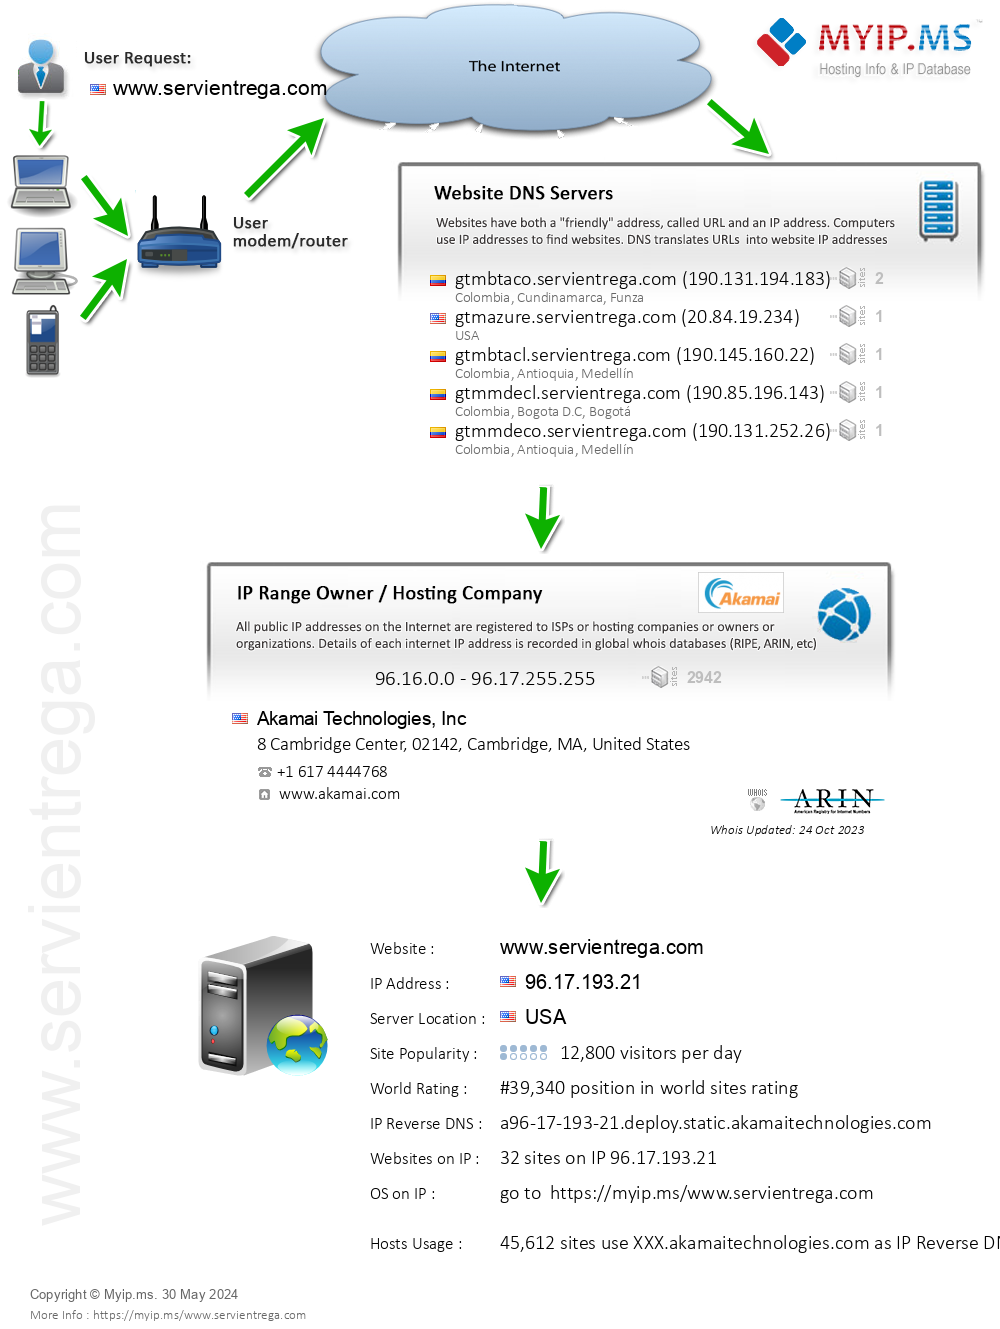 Servientrega.com - Website Hosting Visual IP Diagram